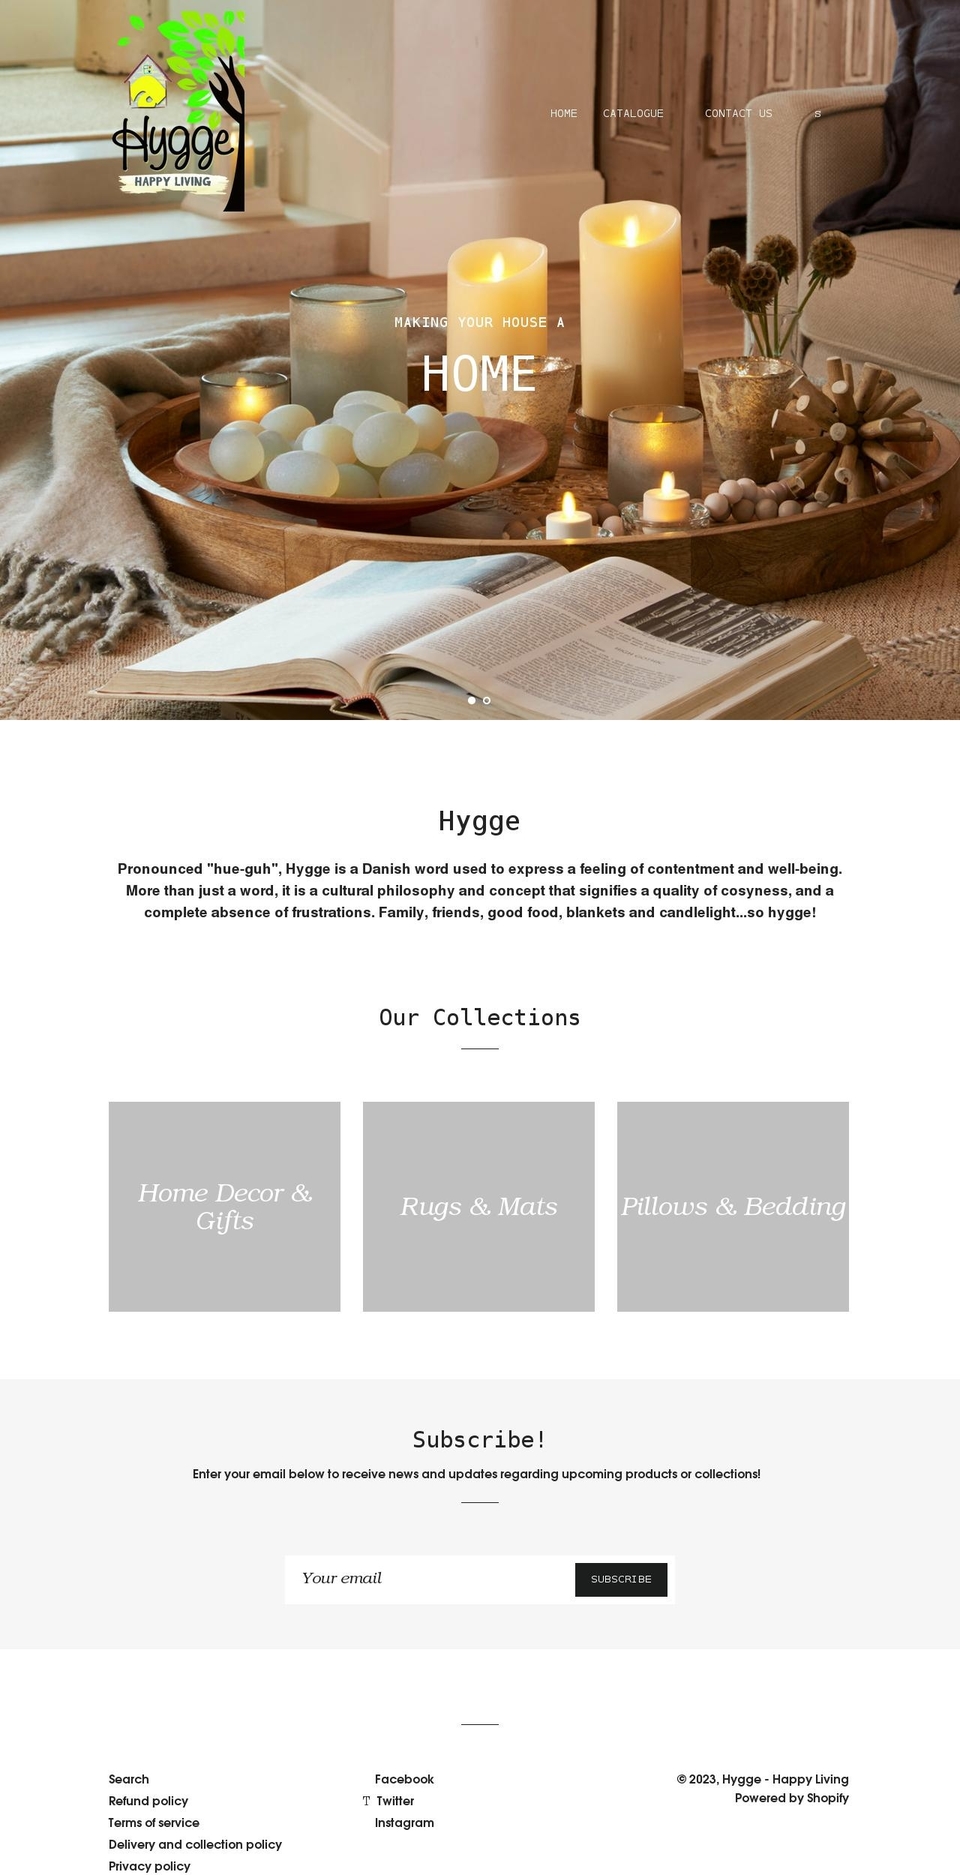 hyggegib.com shopify website screenshot